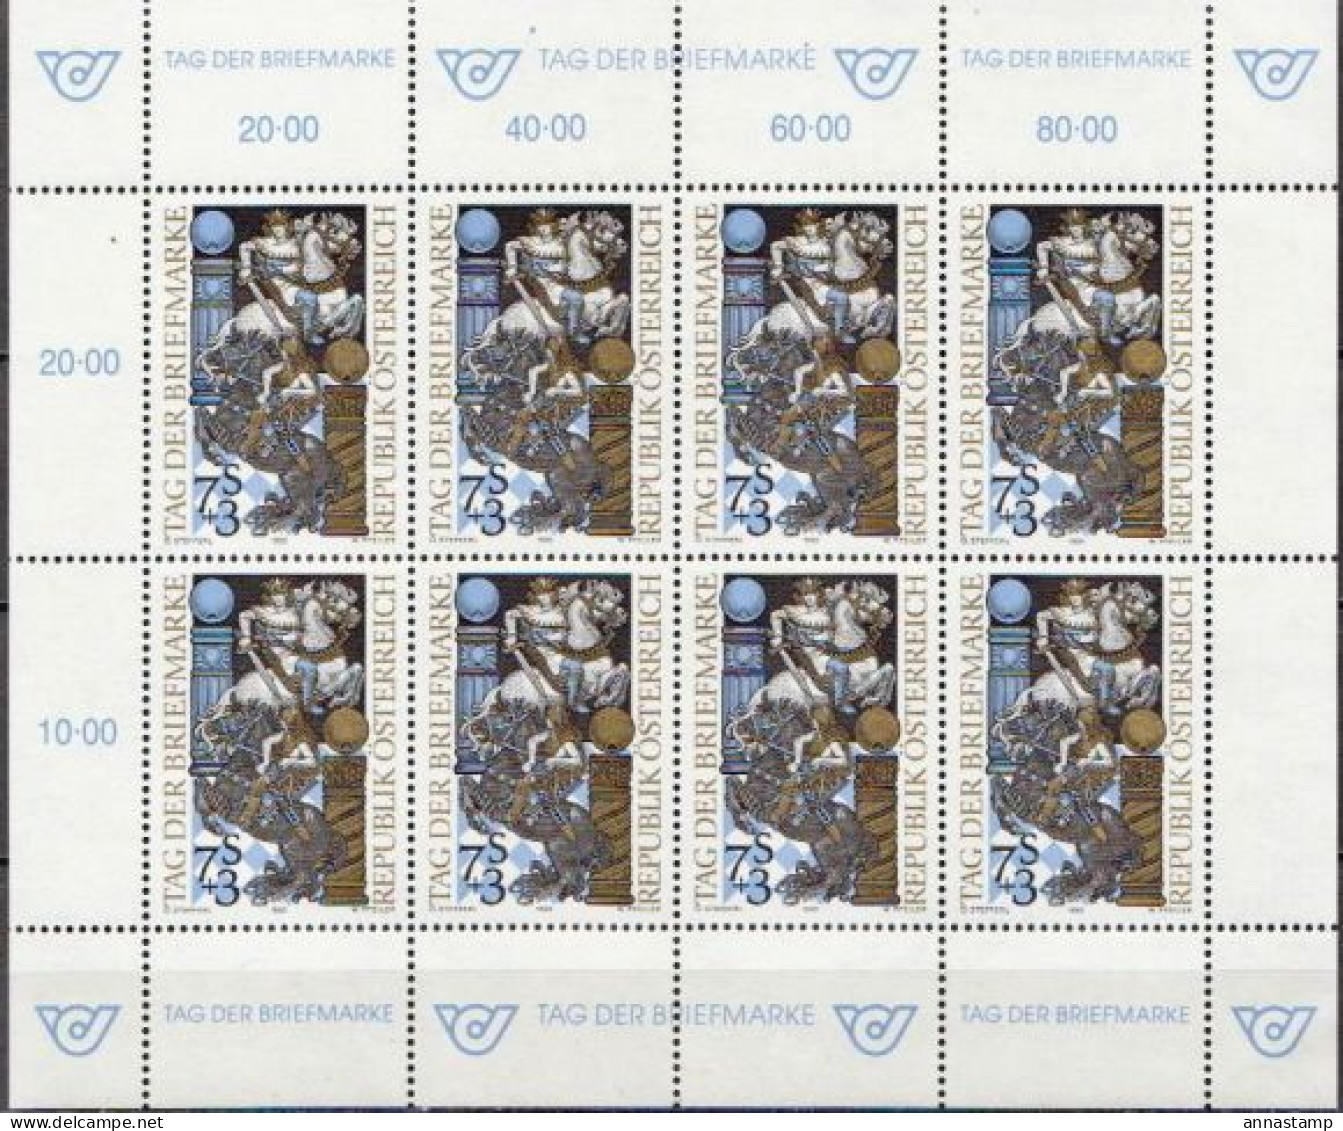 Austria MNH Minisheet - Tag Der Briefmarke